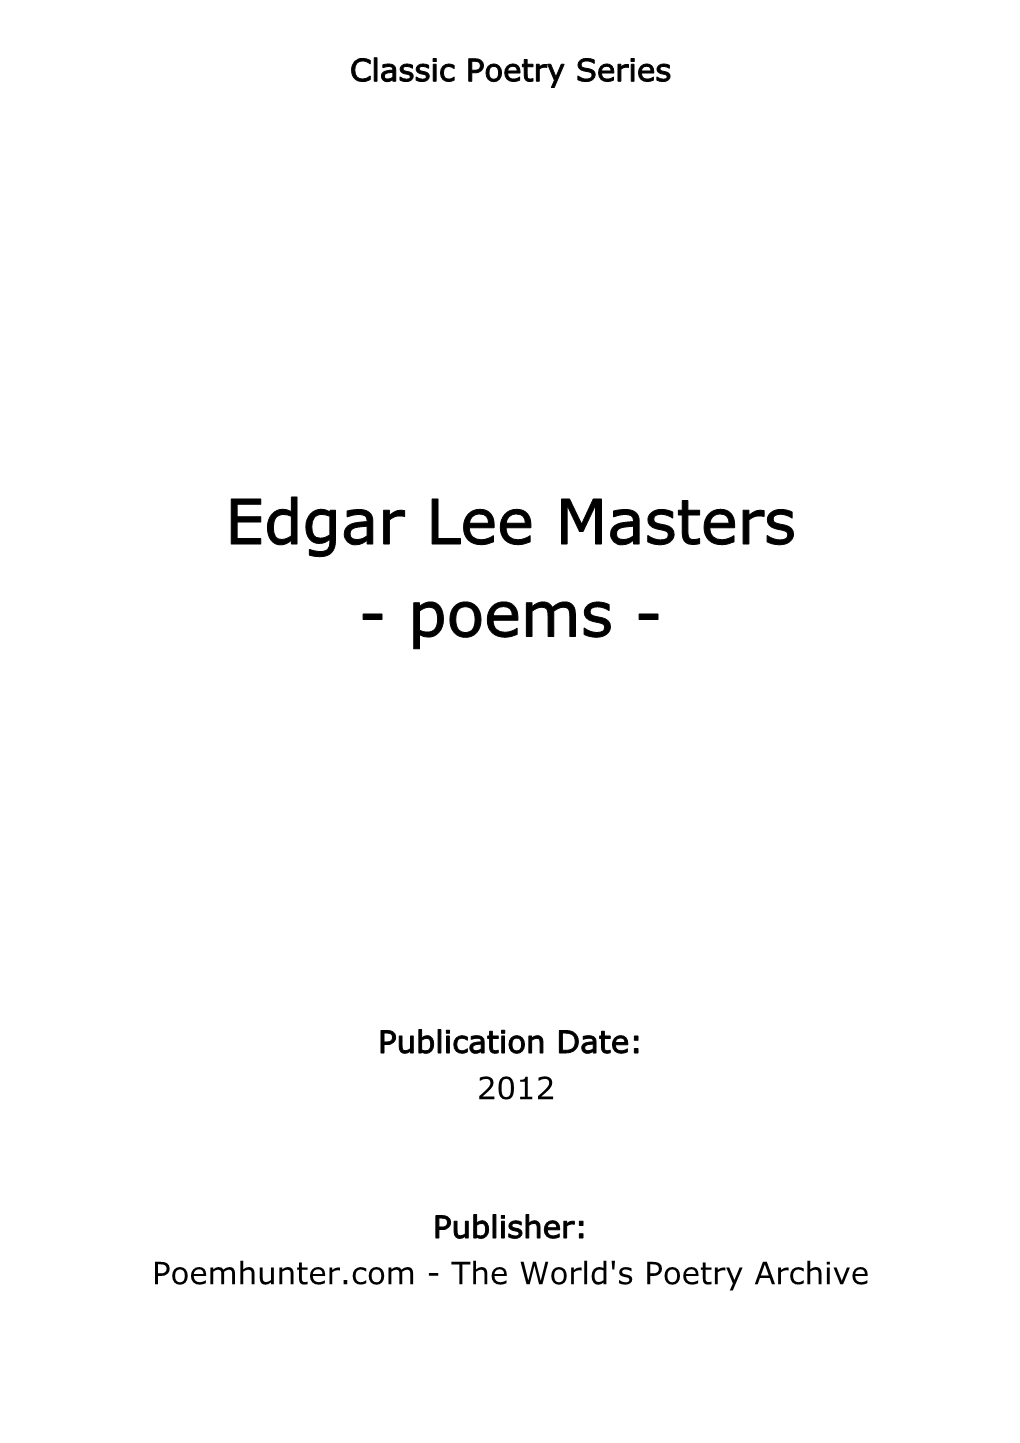 Edgar Lee Masters - Poems